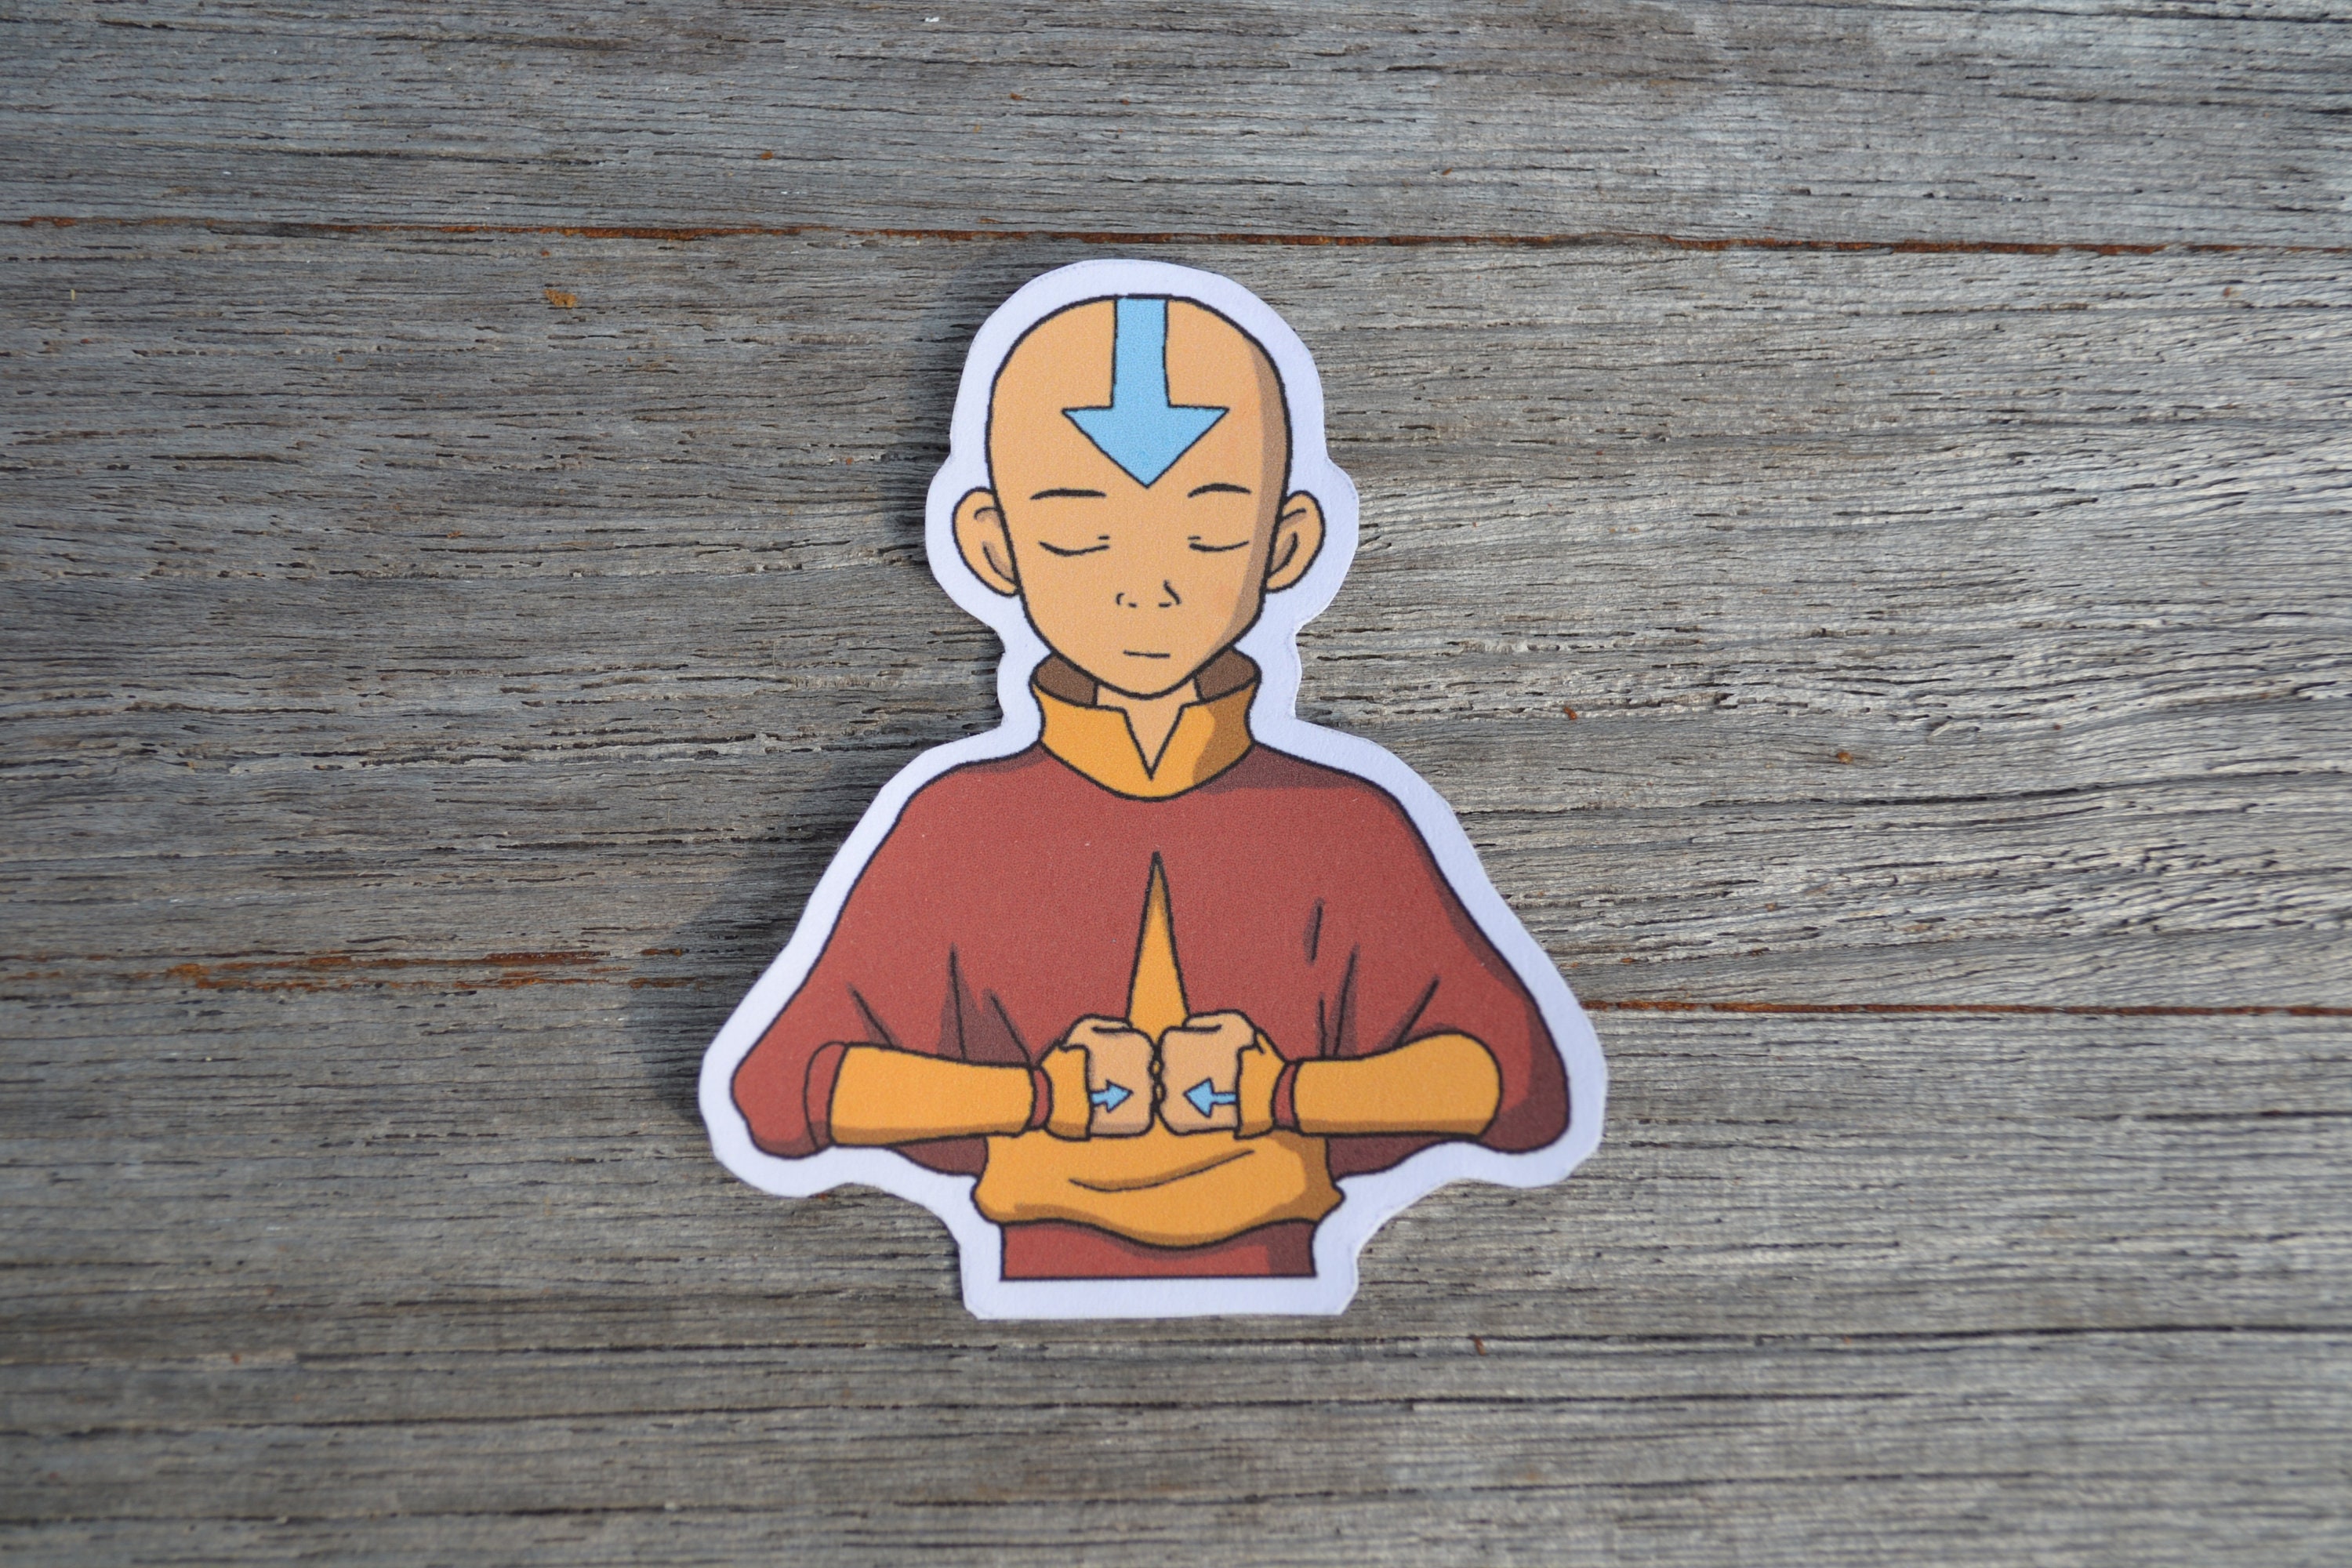 Avatar Aang Sticker Avatar The Last Airbender 2 Pk Etsy